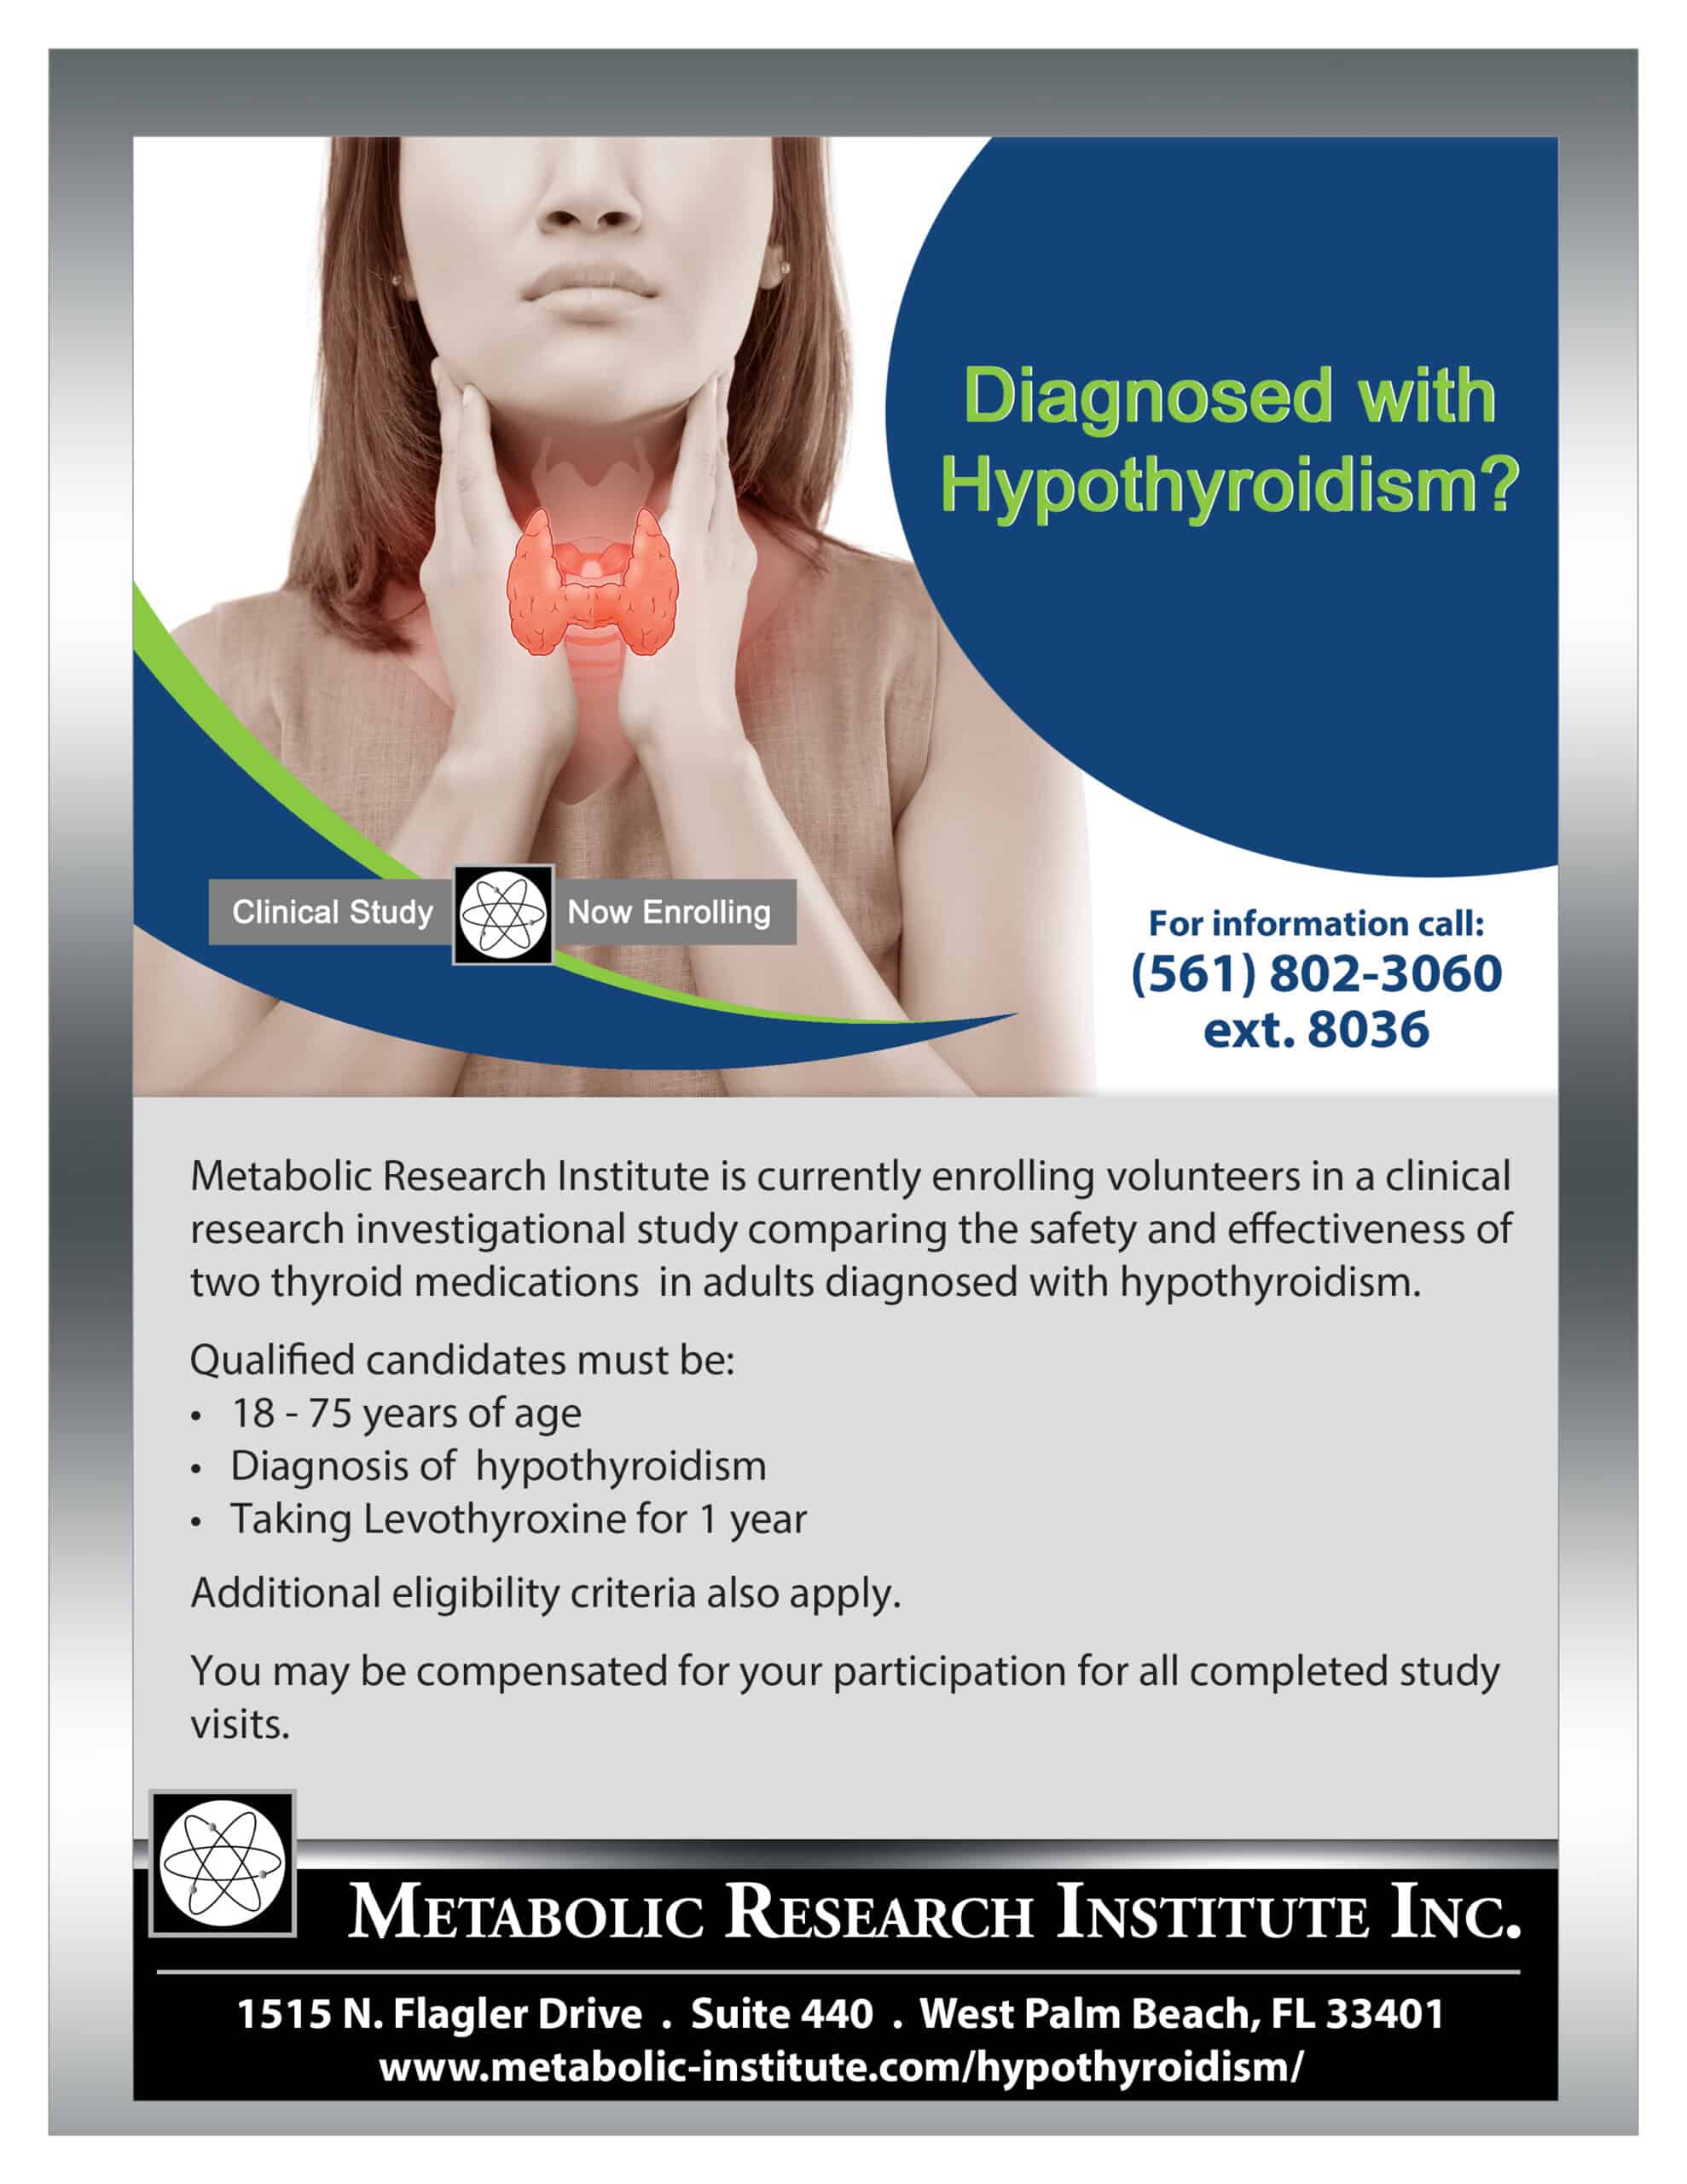 Clinical study flyer for Hypothyroidism